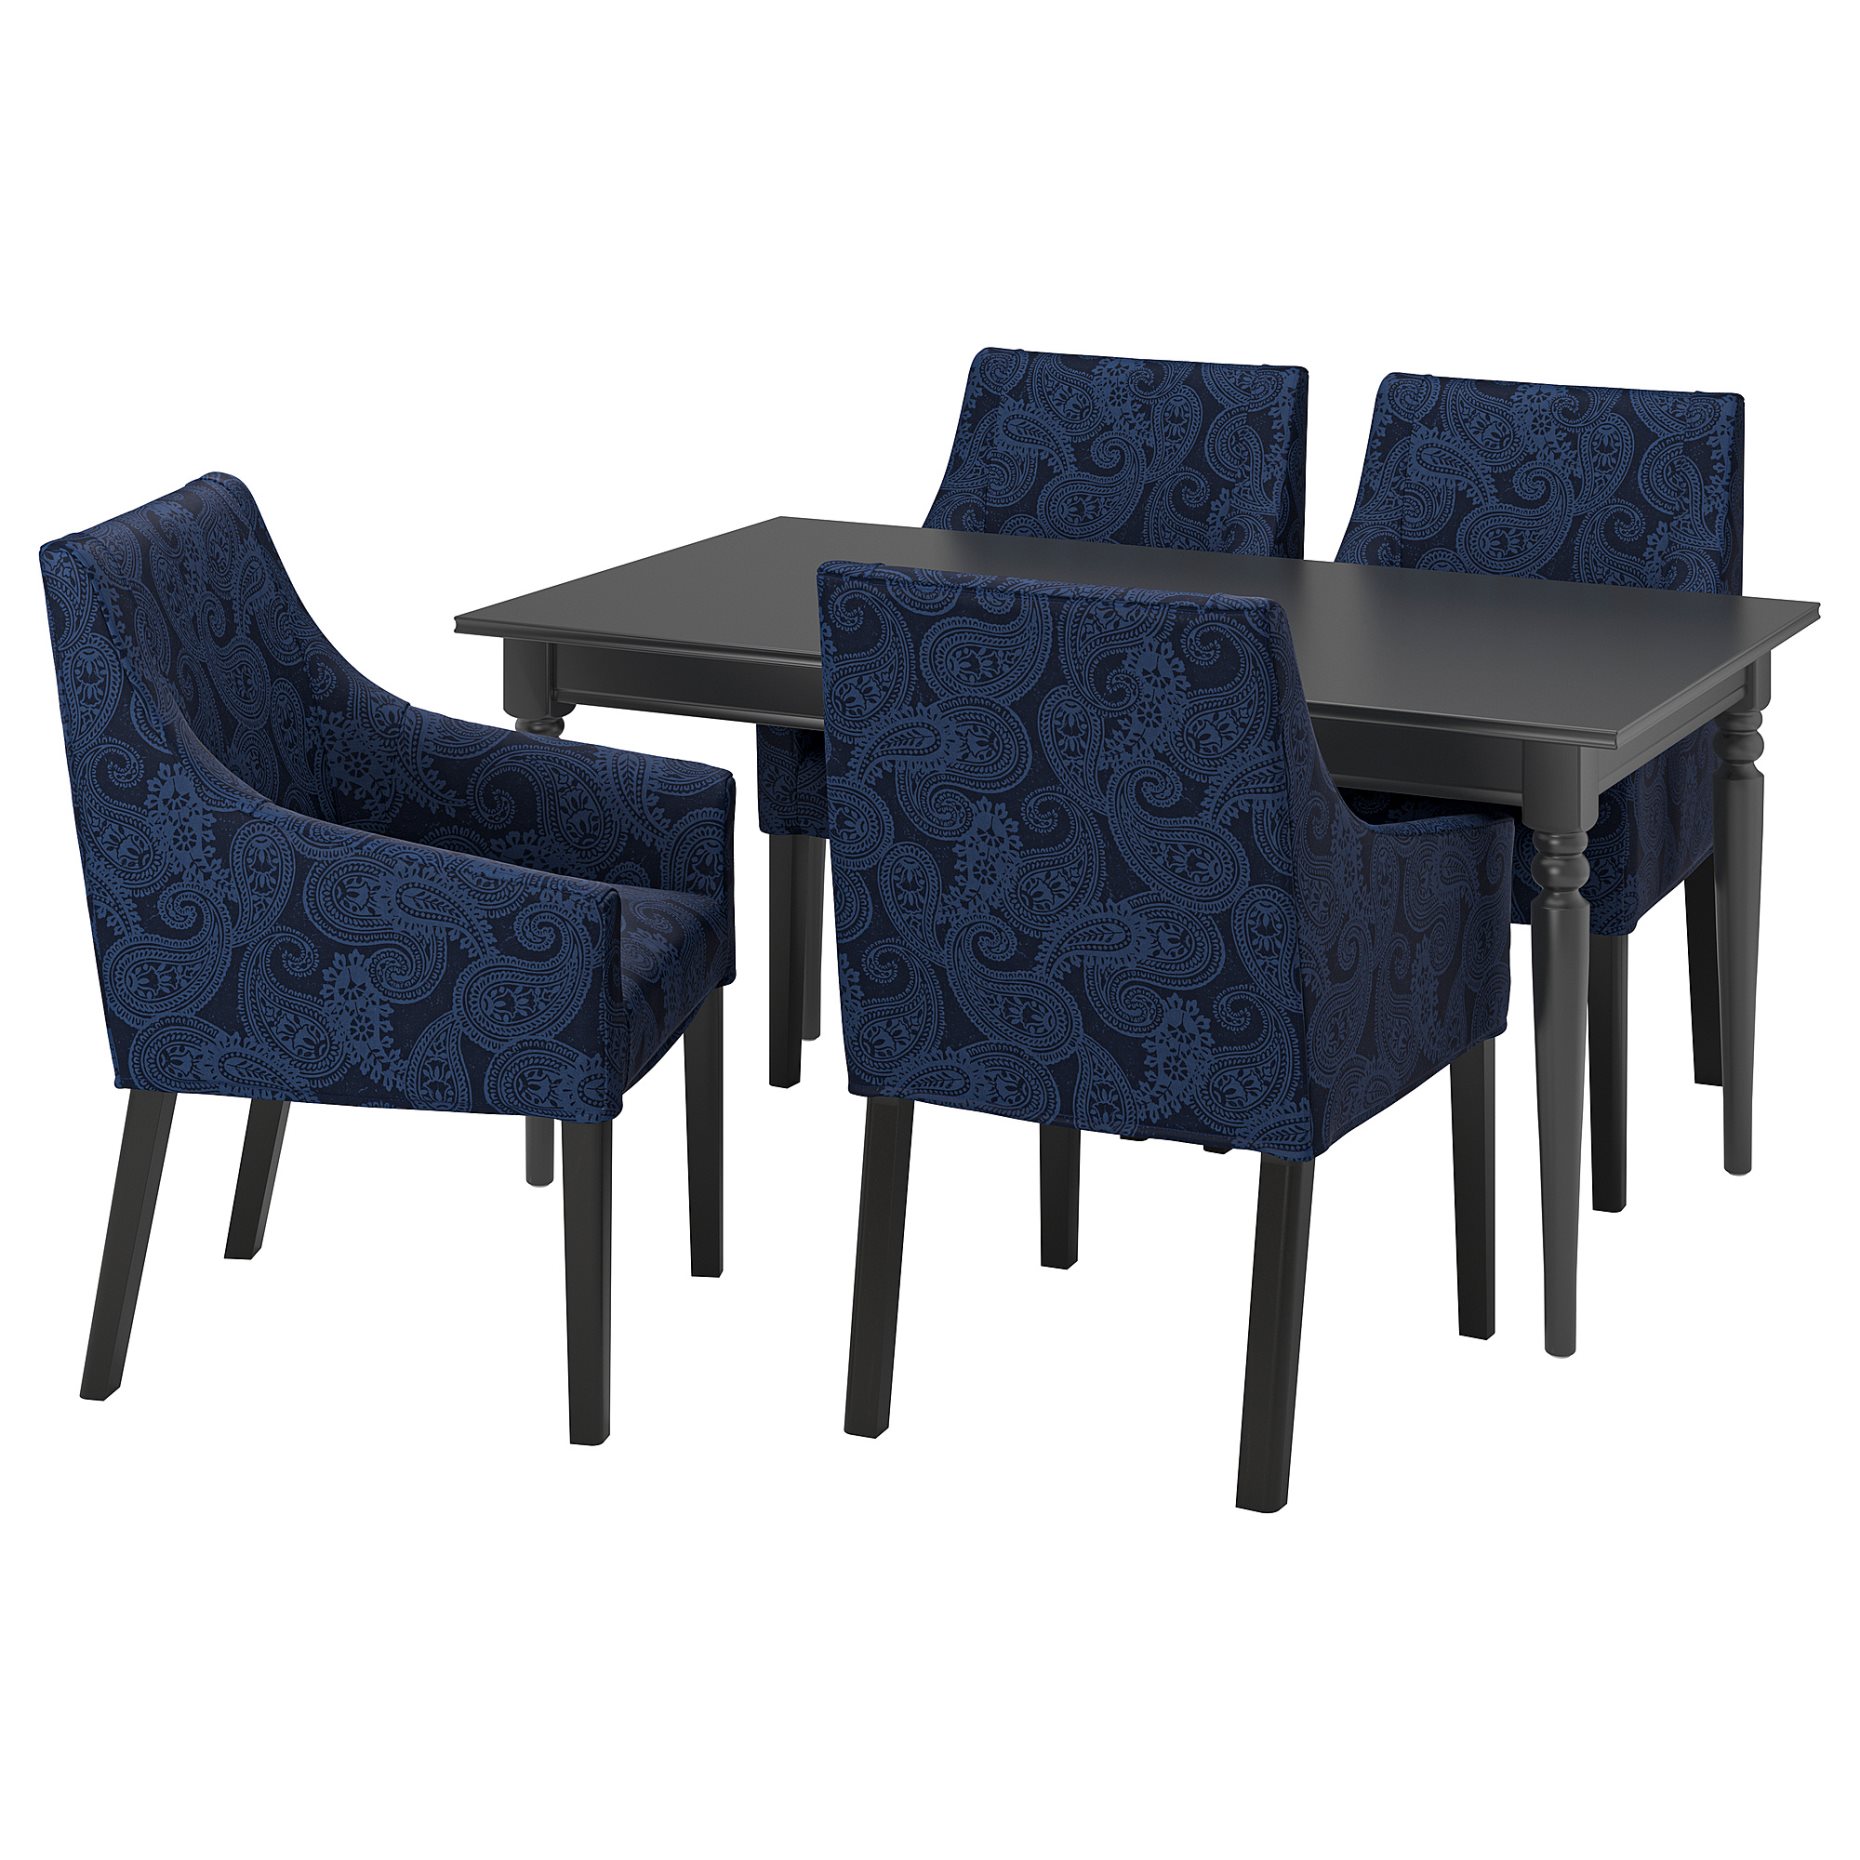 INGATORP/SAKARIAS, table and 4 chairs, 155/215 cm, 494.289.96